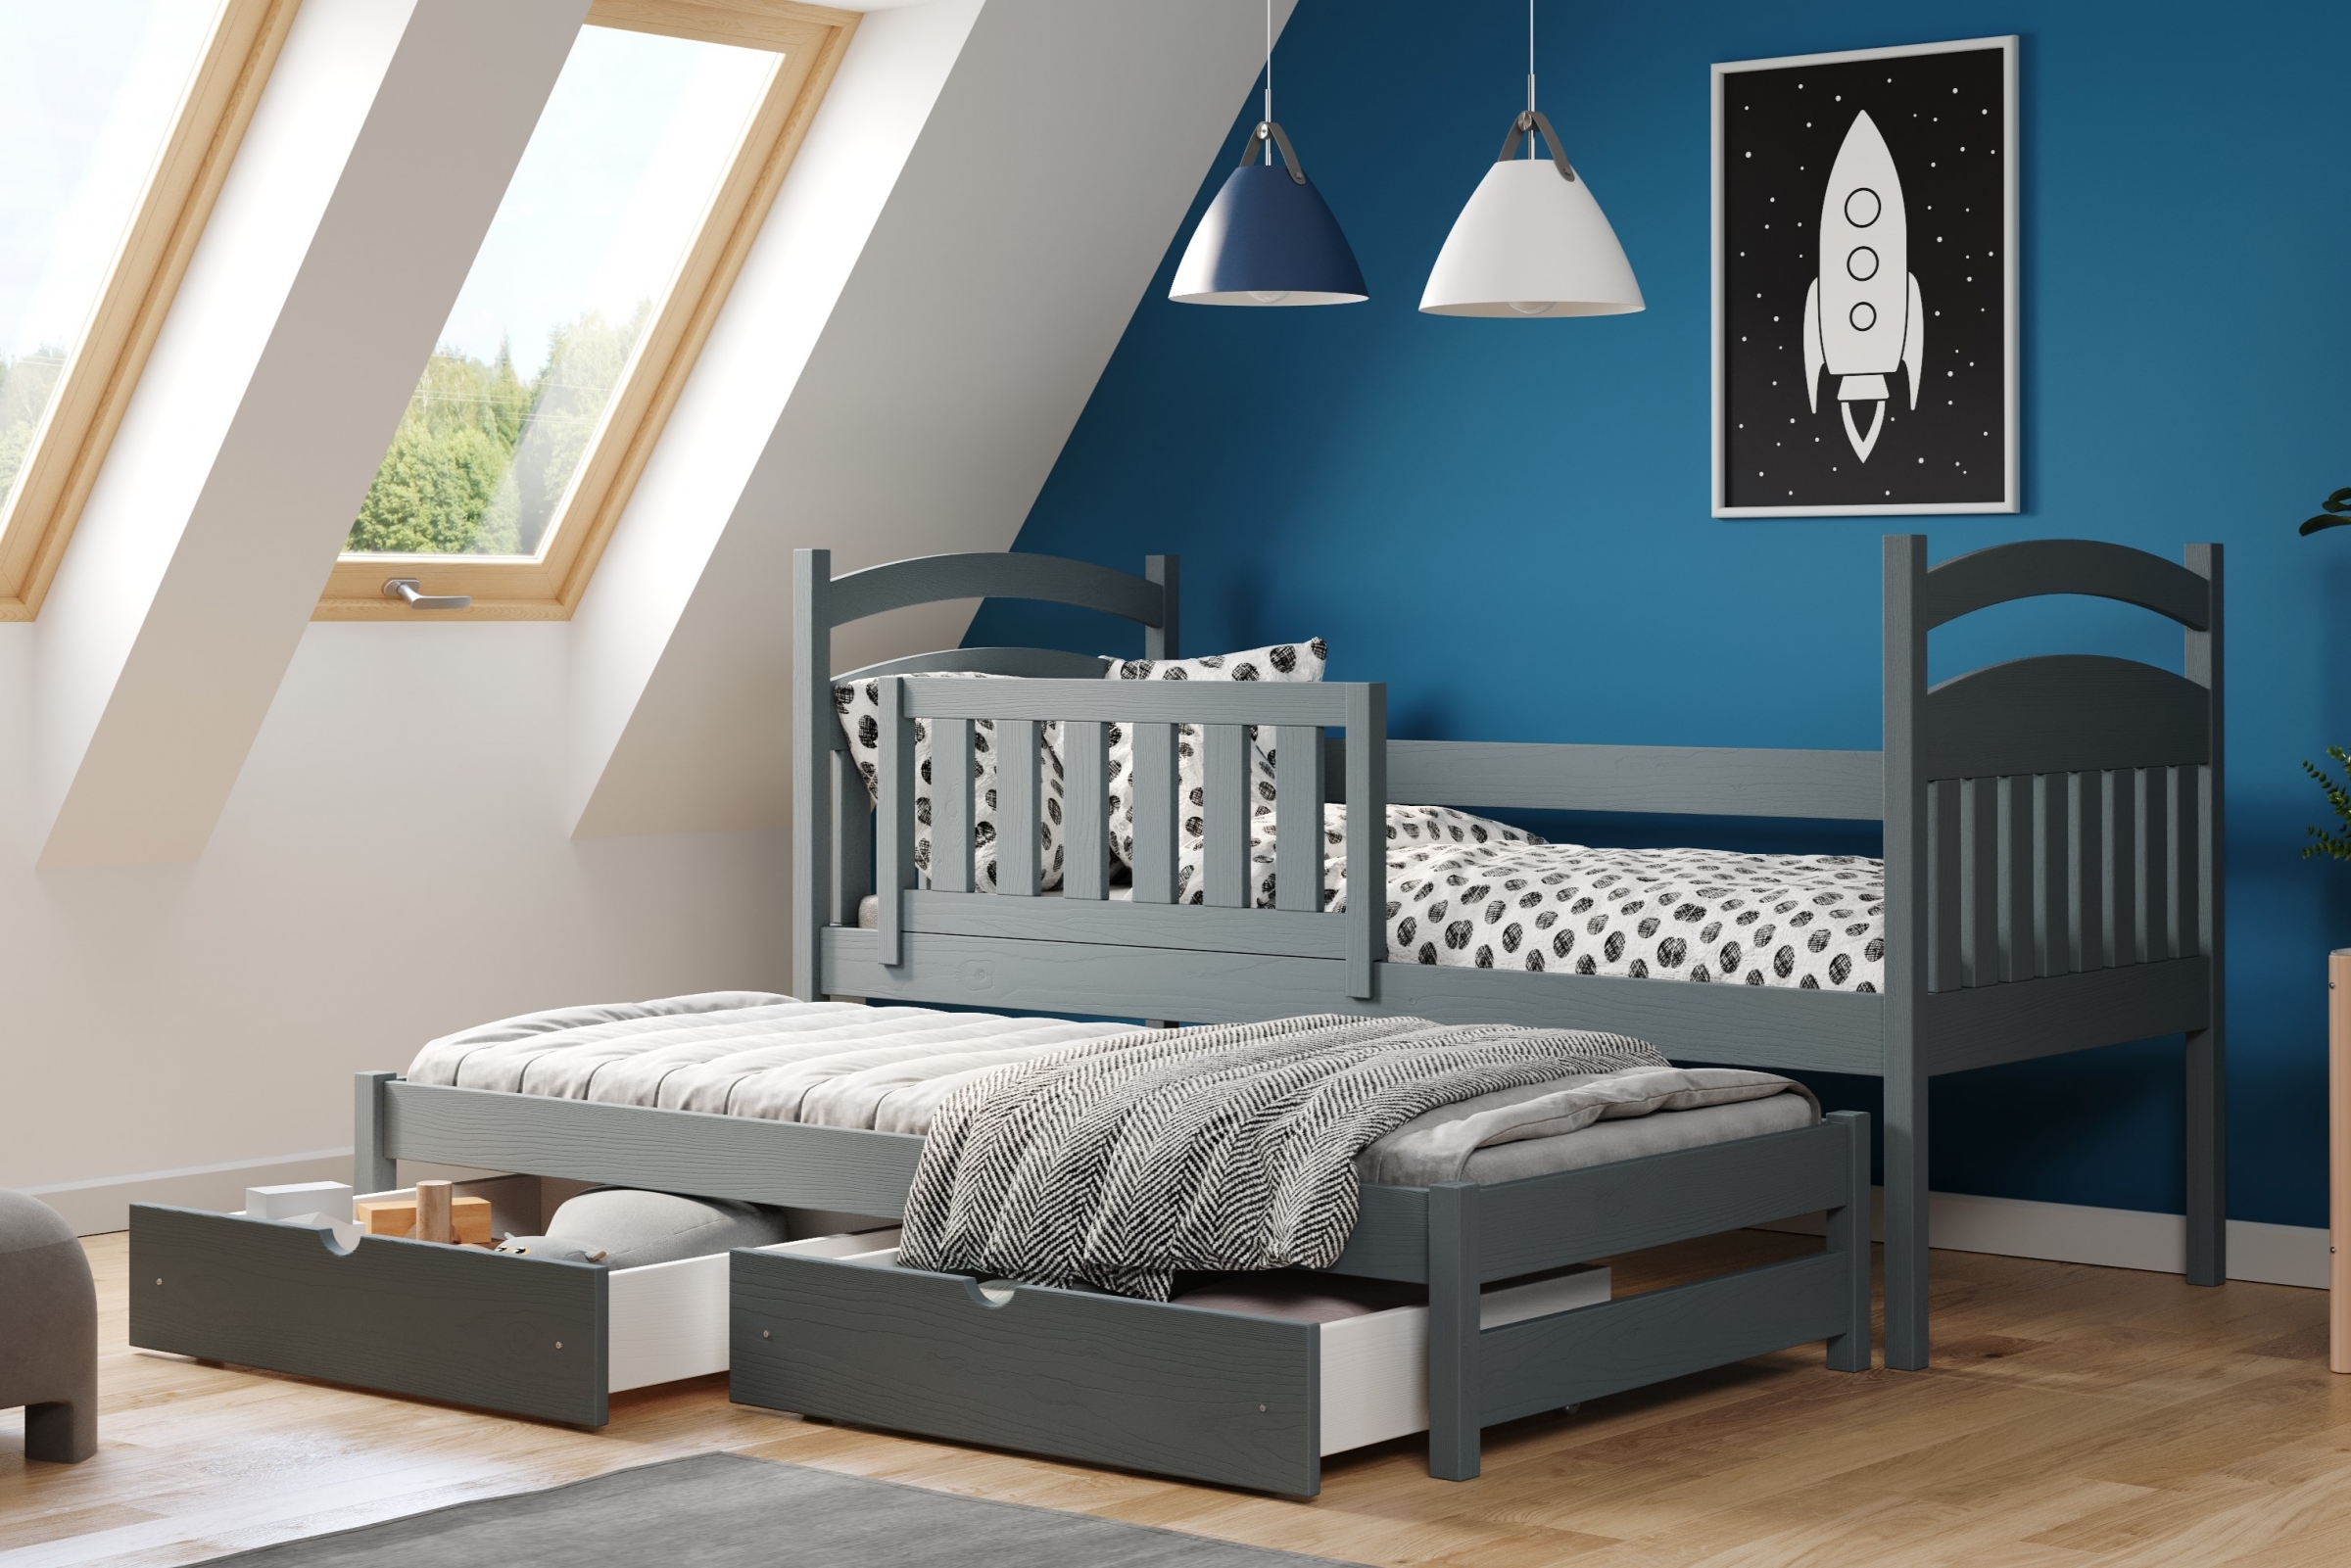 Detská posteľ prízemná výsuvna Amely - Farba grafit, rozmer 80x200 Posteľ dzieciece prízemná s výsuvným lôžkom Amely - Farba grafit - vizualizácia